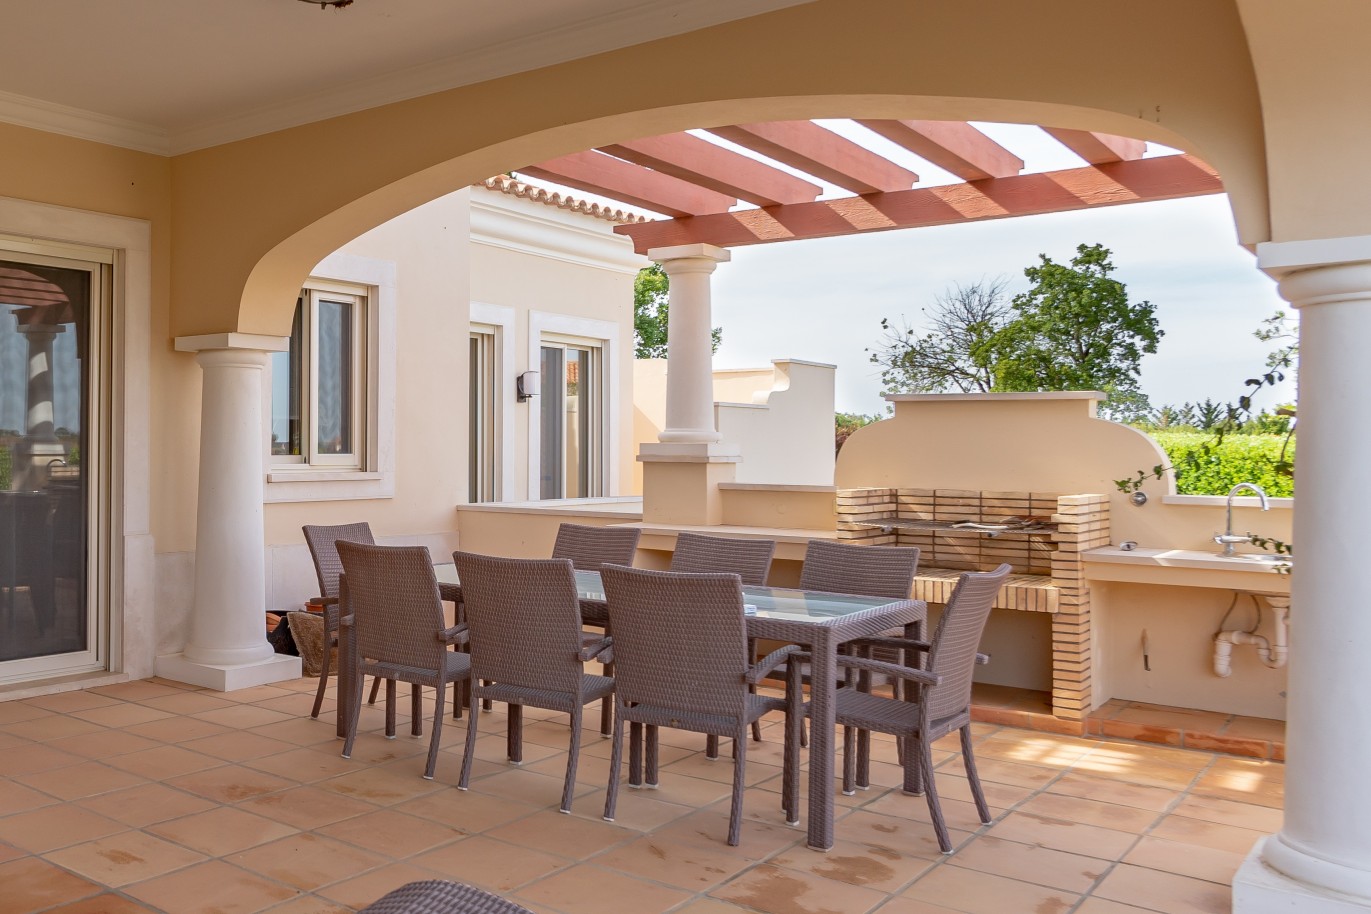 4 Bedroom Villa with pool for sale in Vila Real de Santo Antonio, Algarve_215710